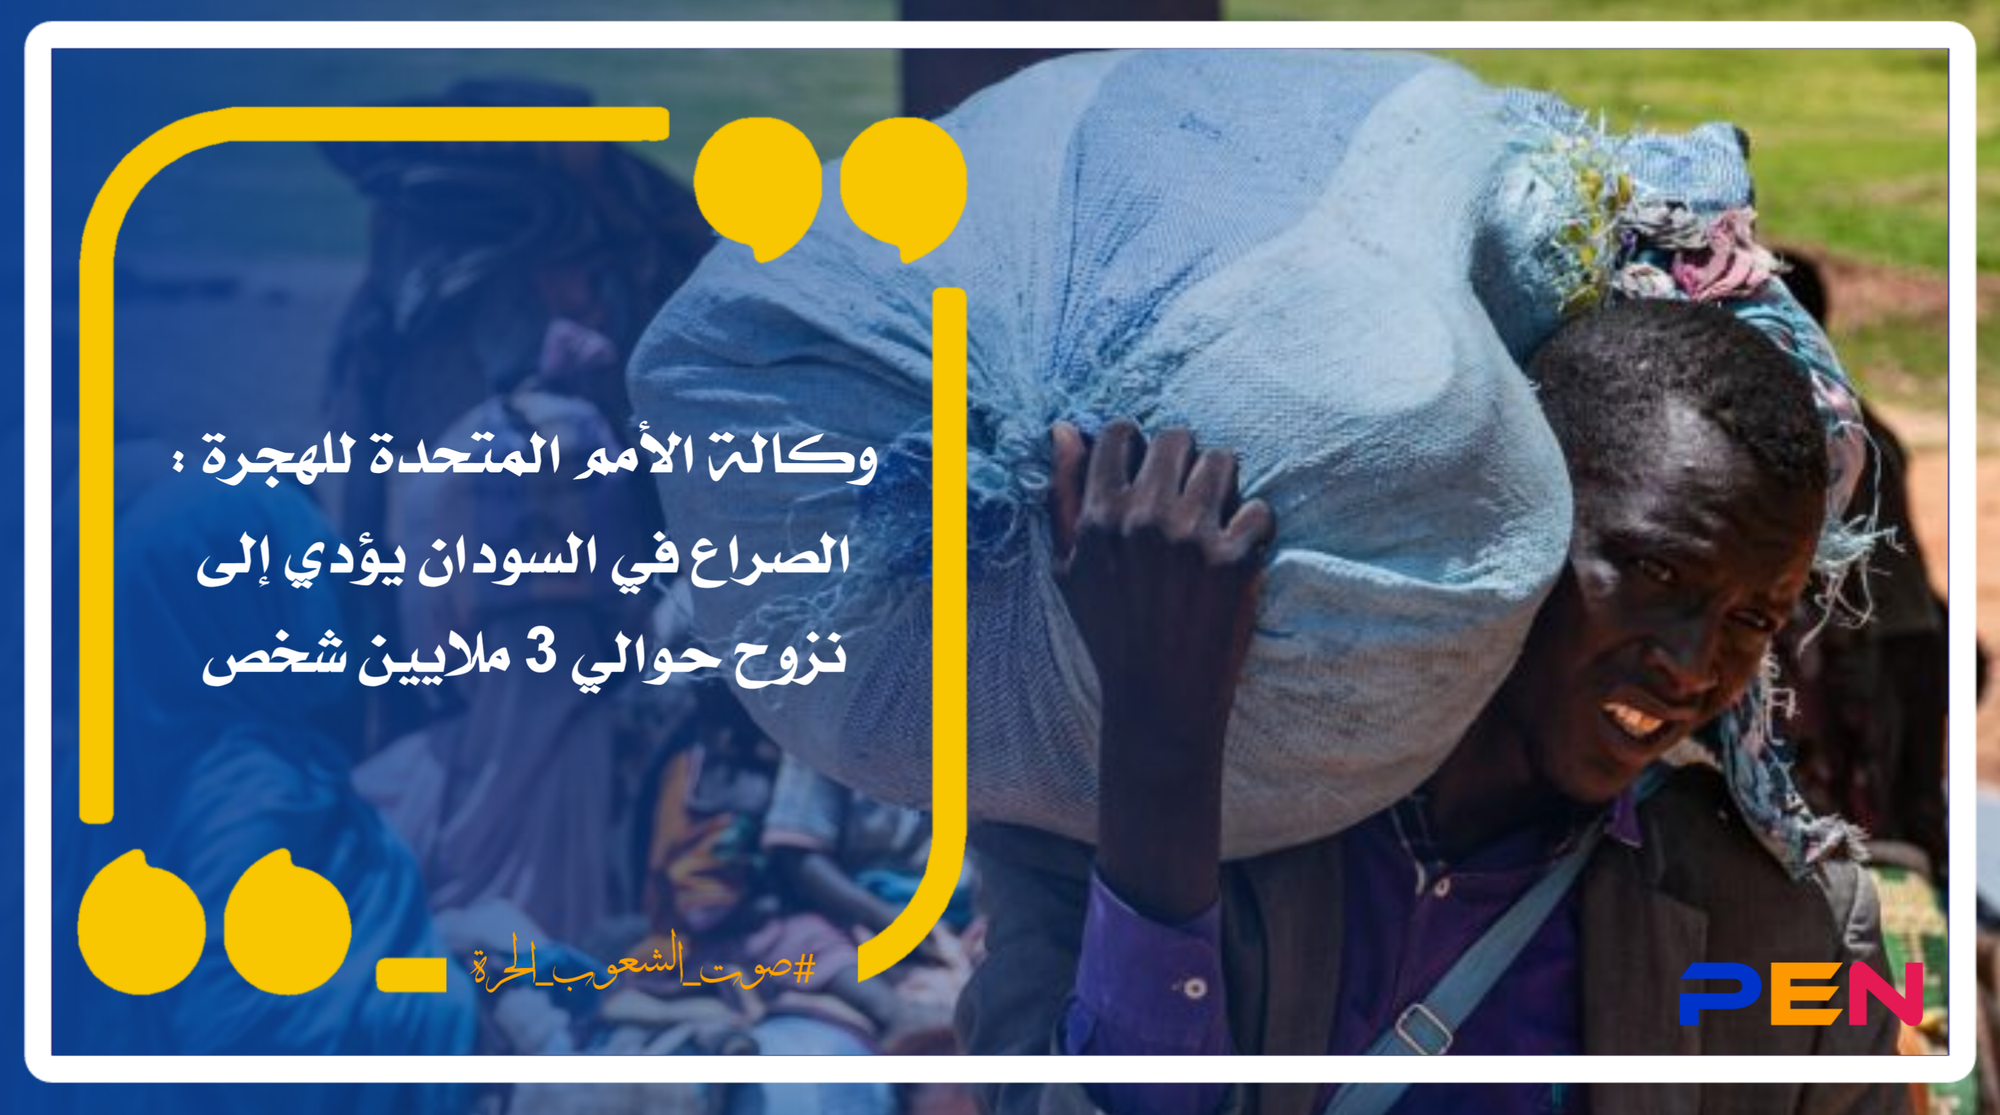 وكالة الأمم المتحدة للهجرة : الصراع في السودان يؤدي إلى نزوح حوالي 3 ملايين شخص